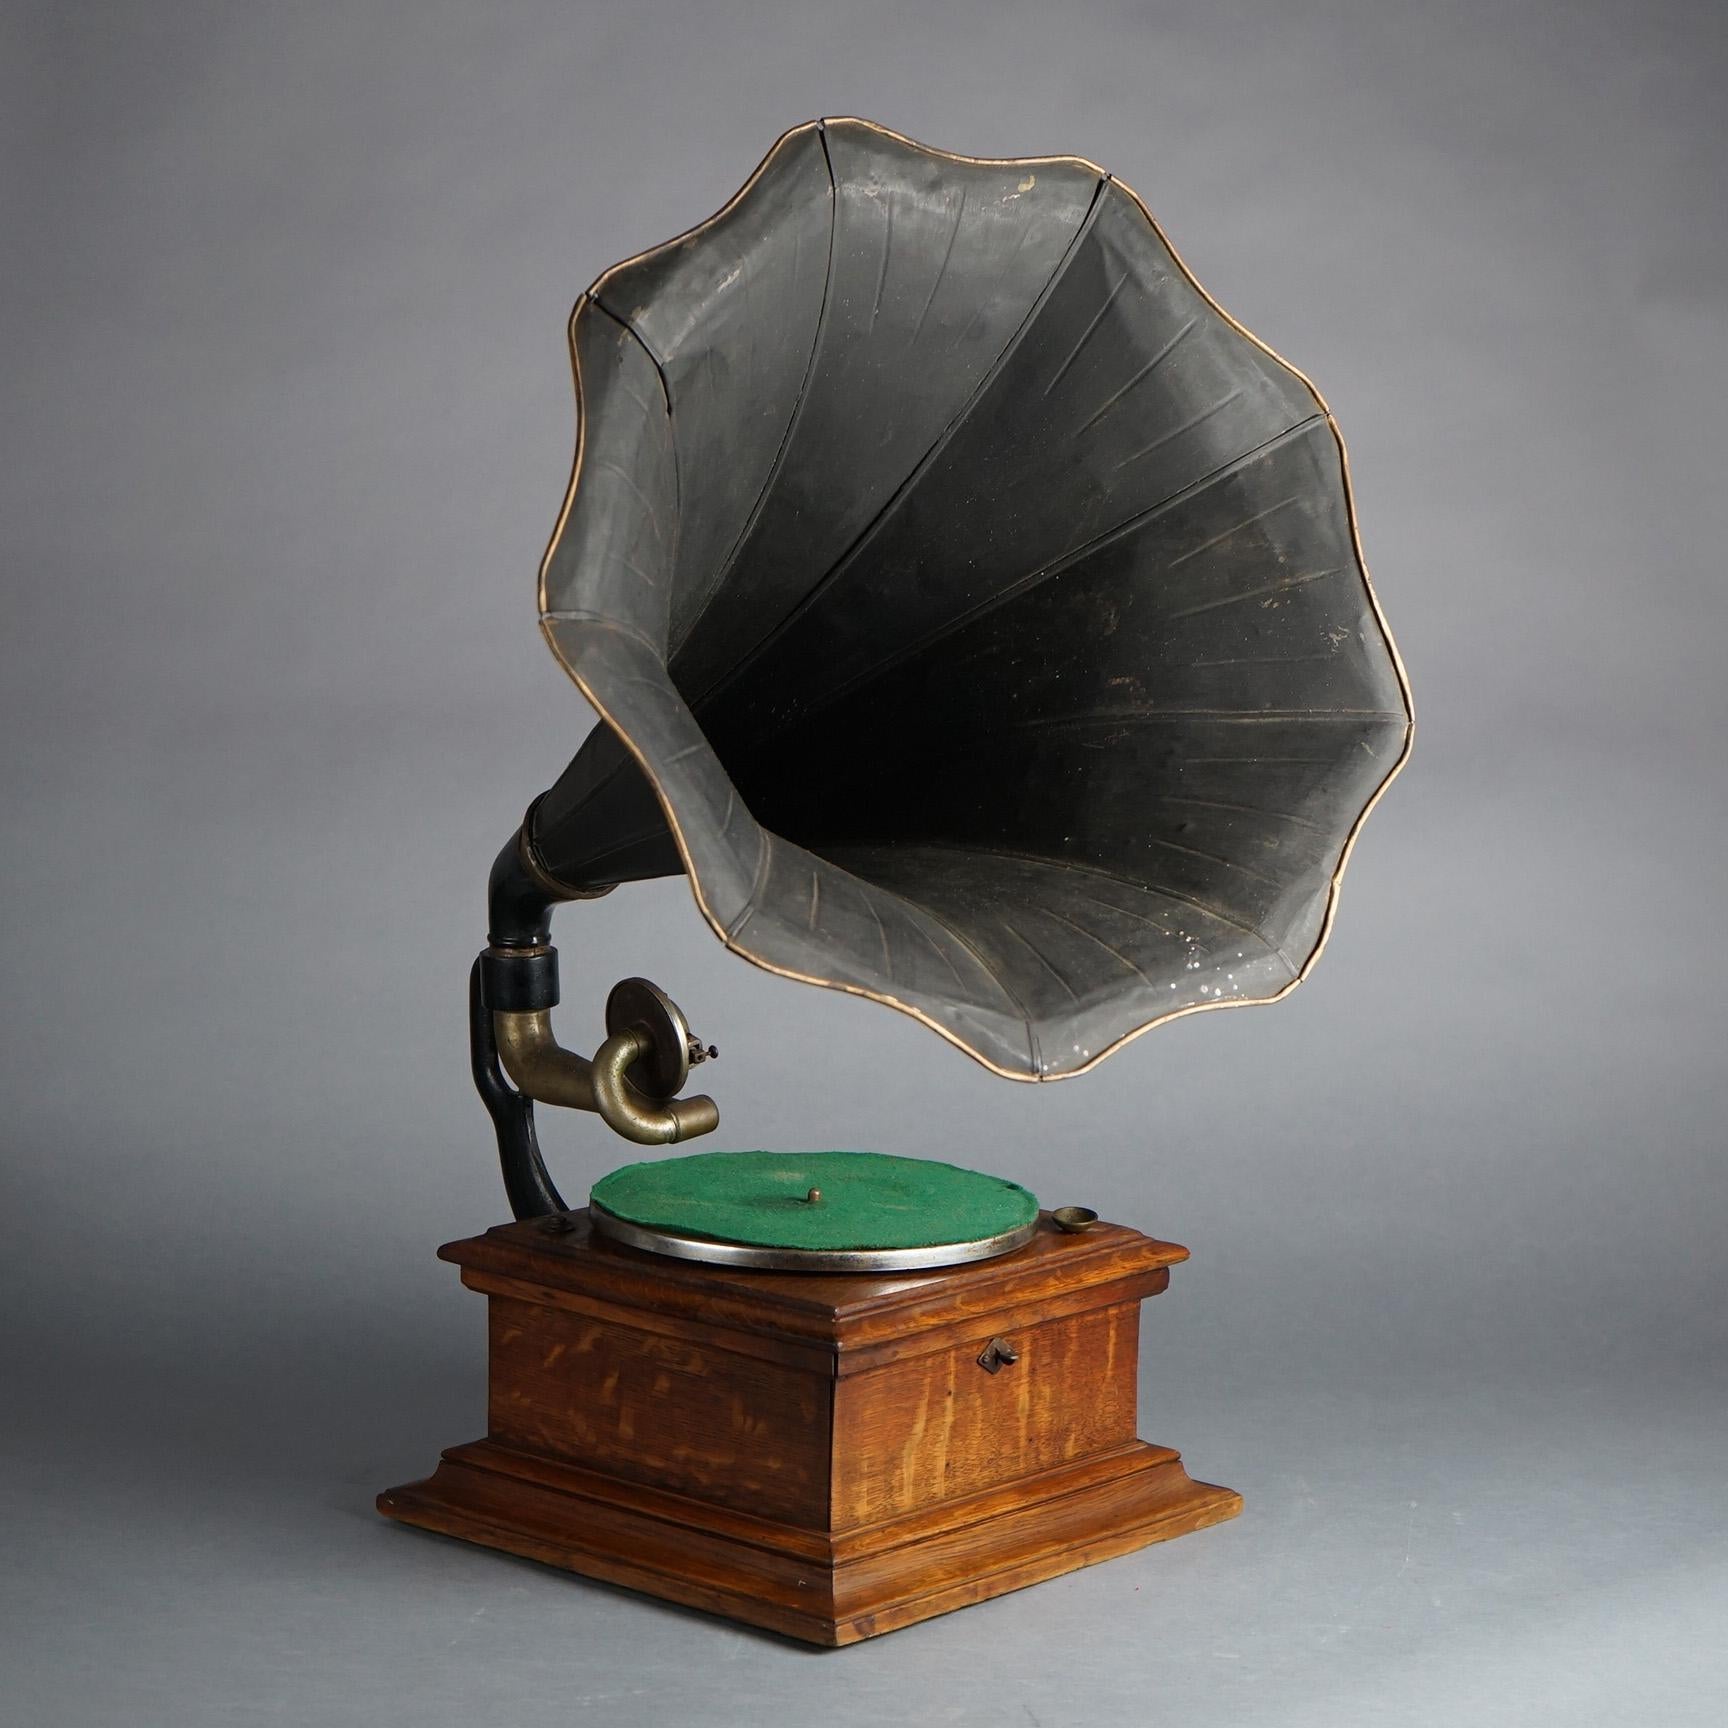 Antike Victor Victrola Eiche Tischplatte Scheibe außerhalb Horn Phonograph mit Viertel gesägt Eiche Fall, CIRCA 1900

Maße - 30,5 